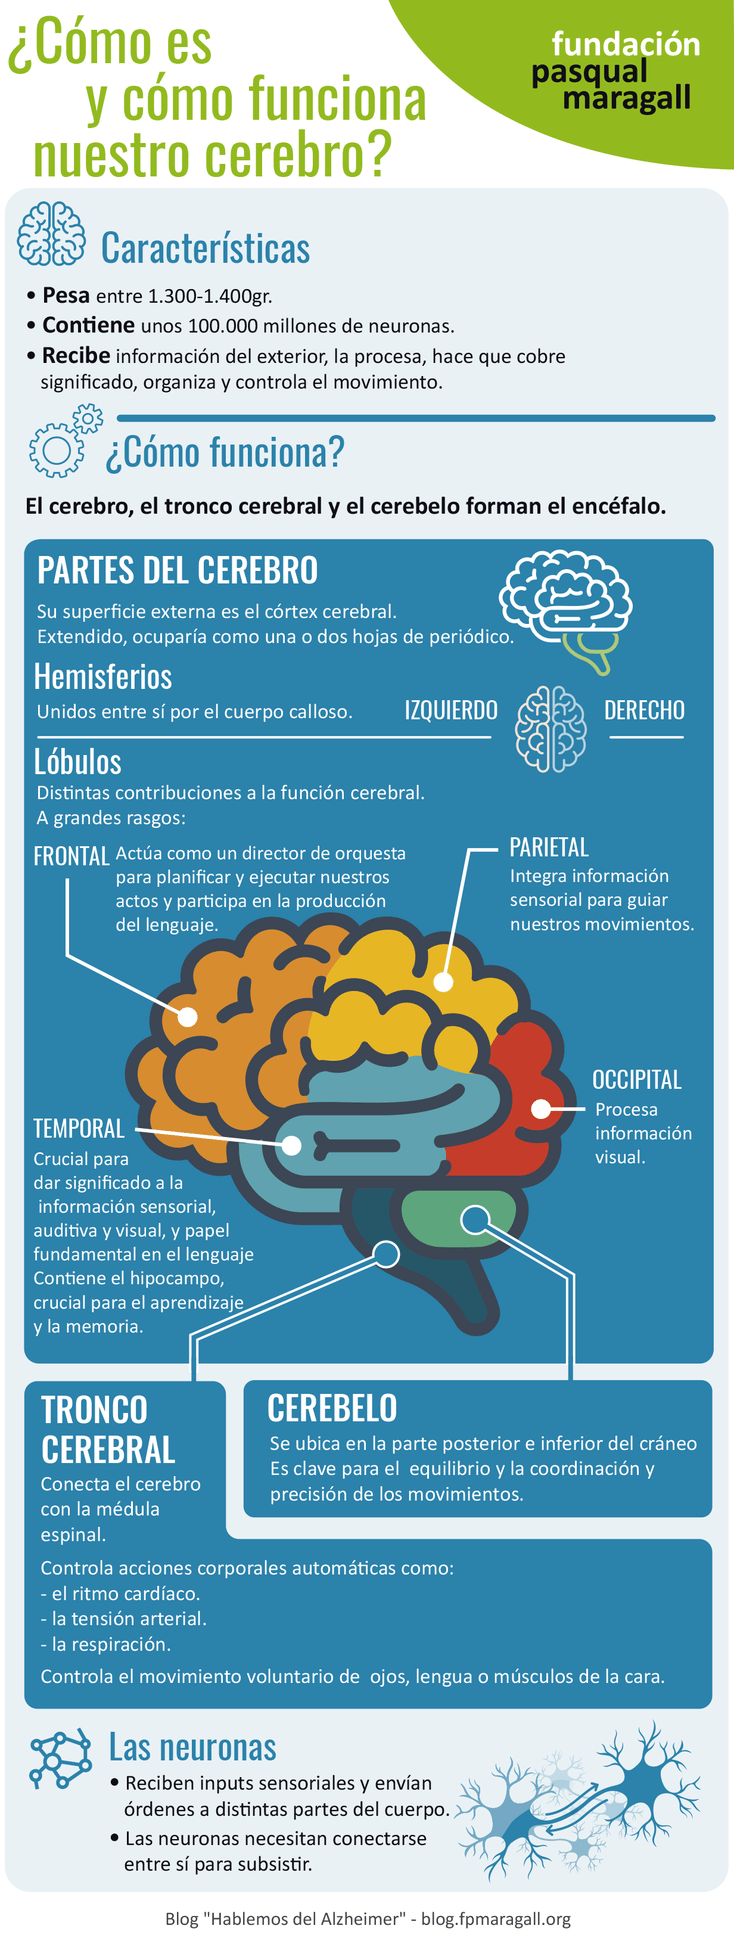 ¿Cómo es y cómo funciona nuestro cerebro?